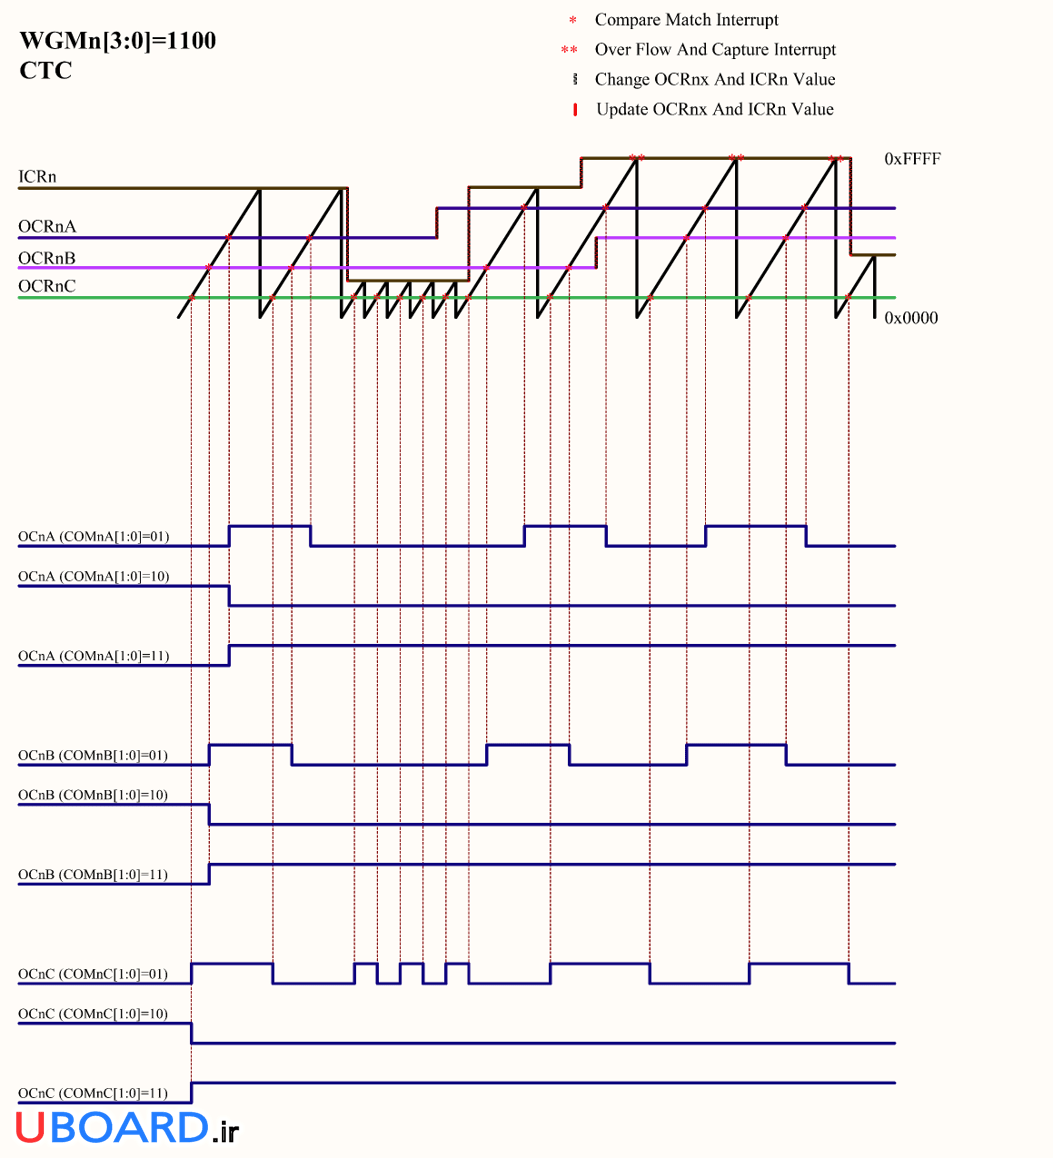 نمودار-زمانی-مد-pwm-ctc-تایمر-کانتر-1-3-avr-atmega128a